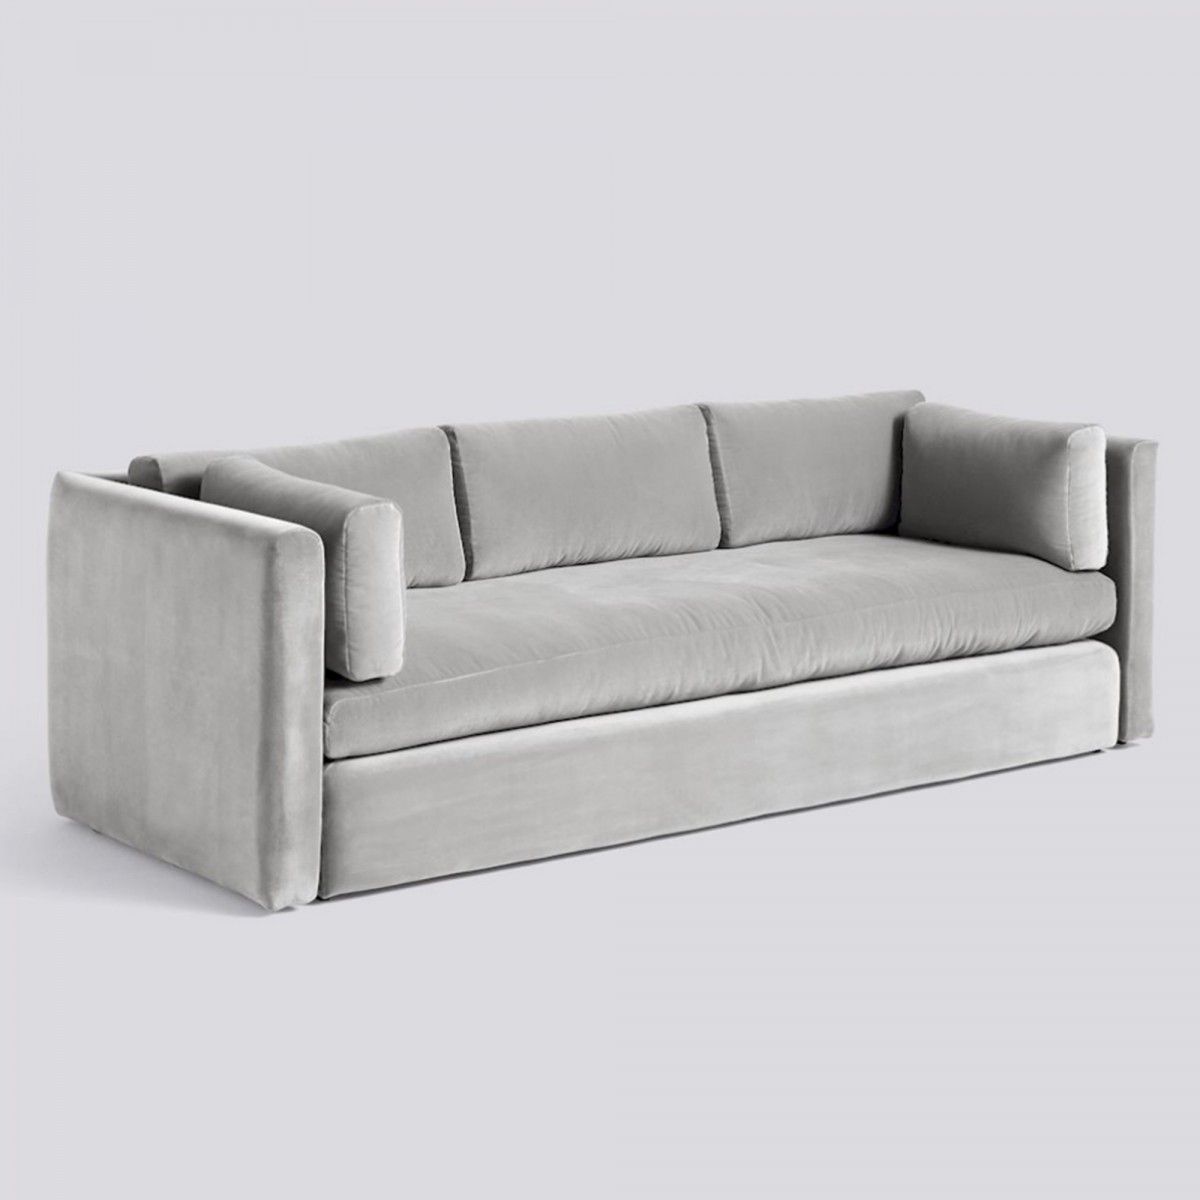 Hackney Light Grey Velvet Sofa – Hay | Grey Velvet Sofa, Hay Hackney Sofa,  Classic Sofa Designs Regarding Light Gray Velvet Sofas (View 15 of 15)